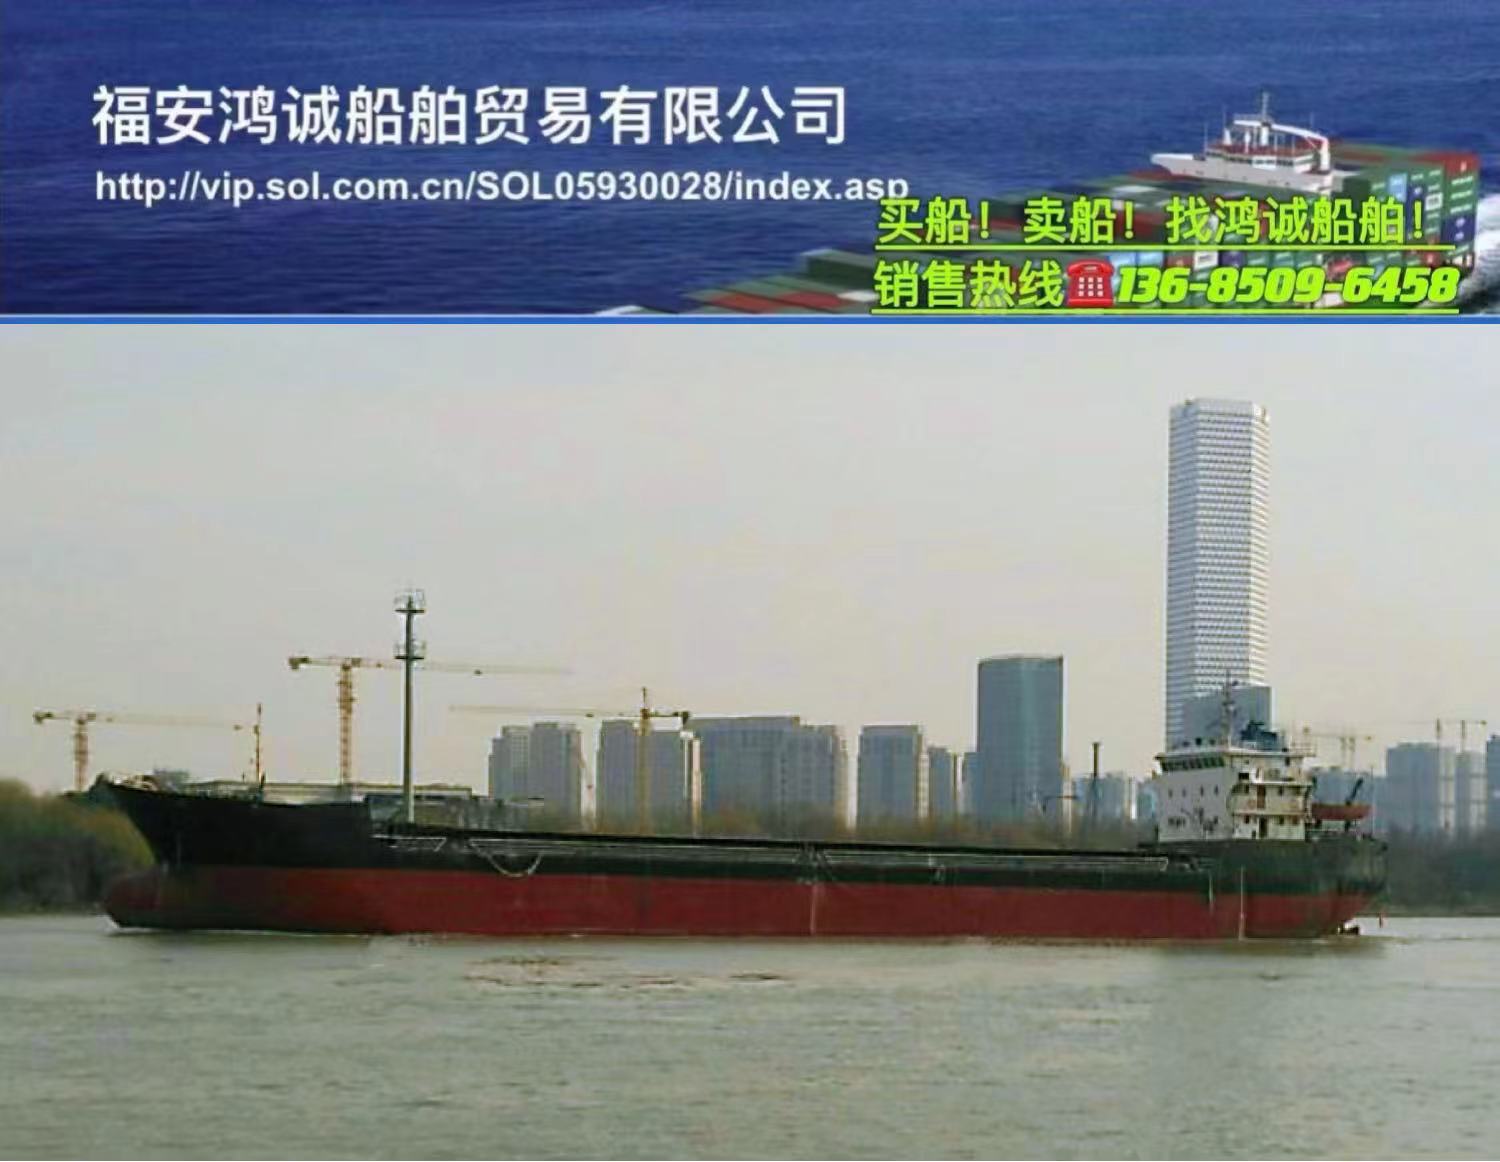 出售5800吨散货船： 2005年6月江苏扬州建造